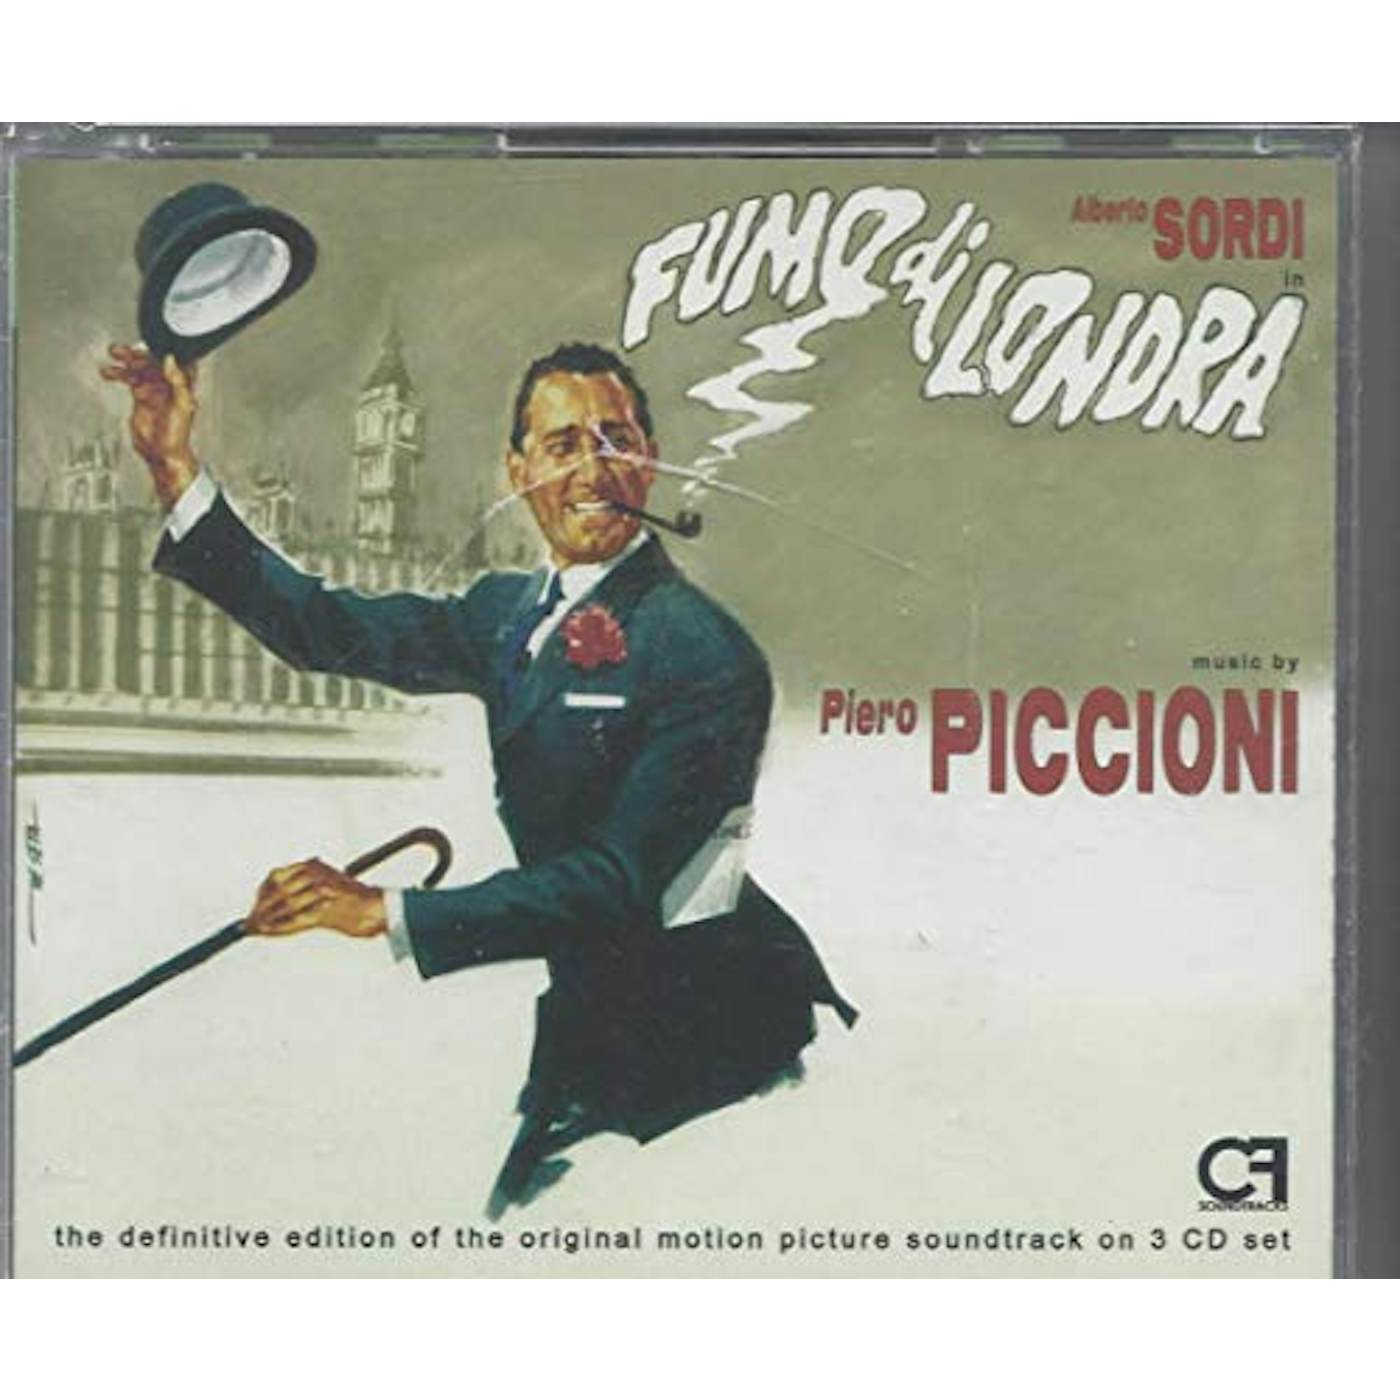 Piero Piccioni FUMO DI LONDRA / Original Soundtrack CD